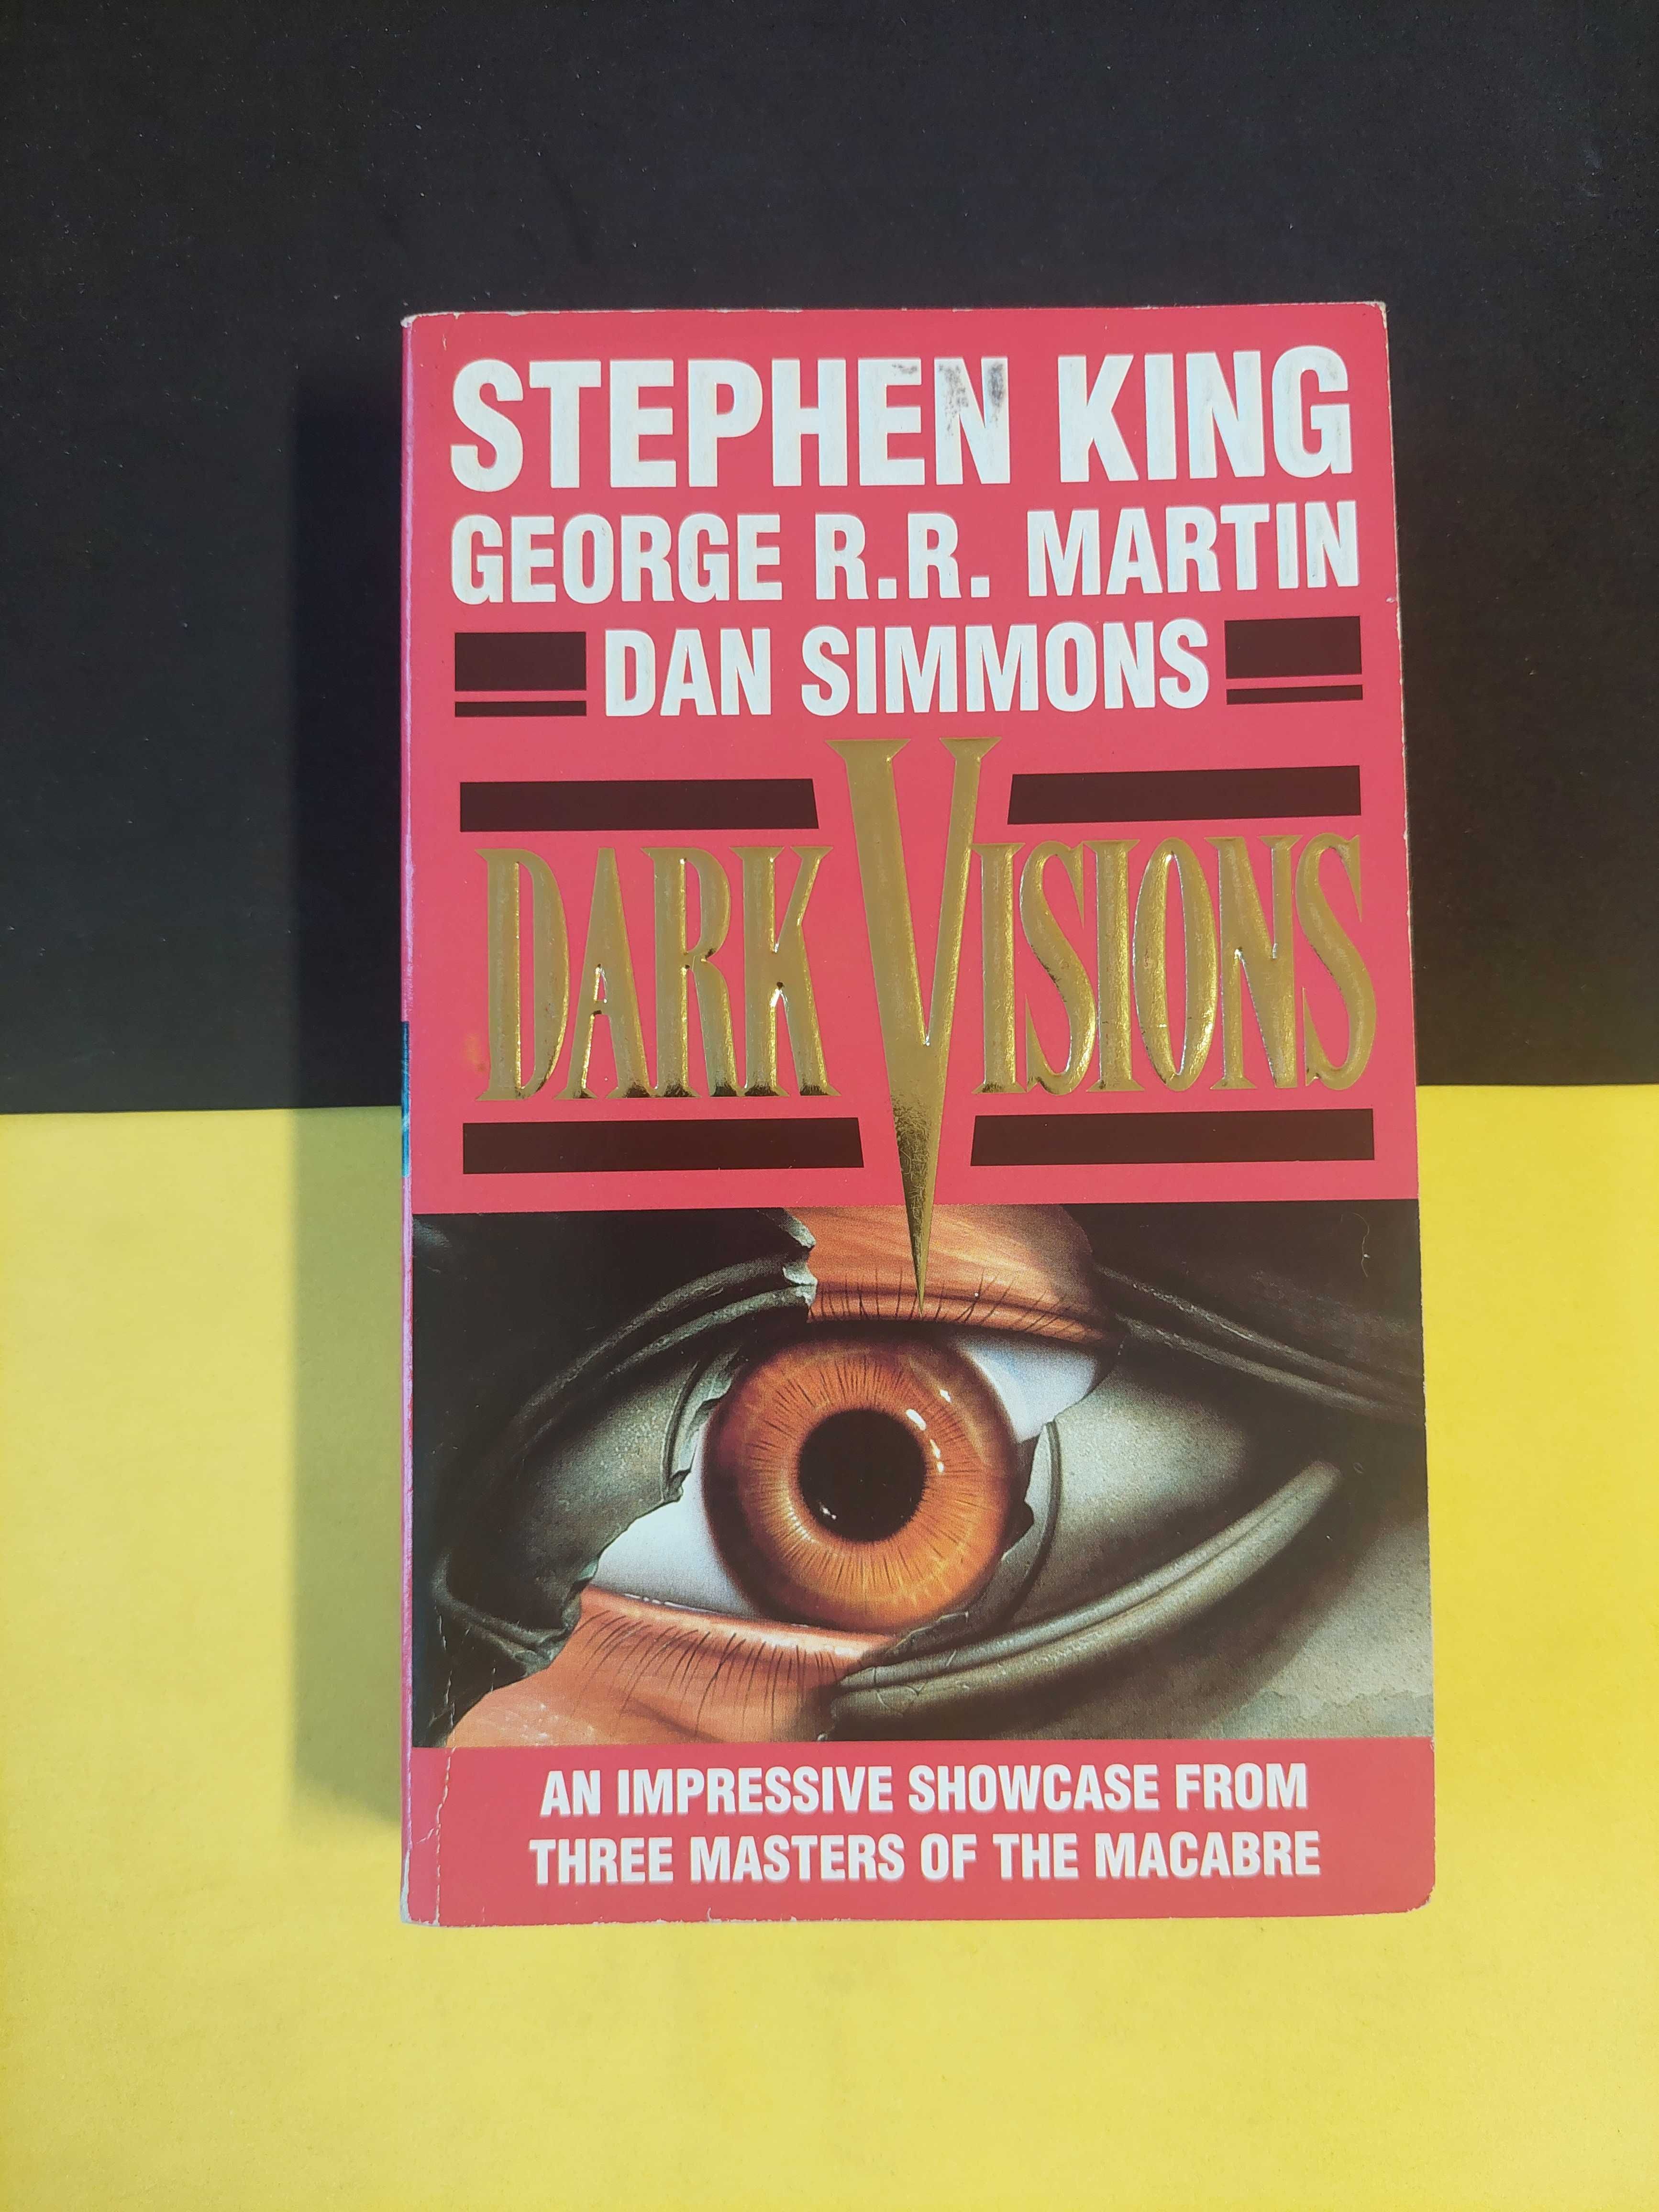 Stephen King - Dark Visions